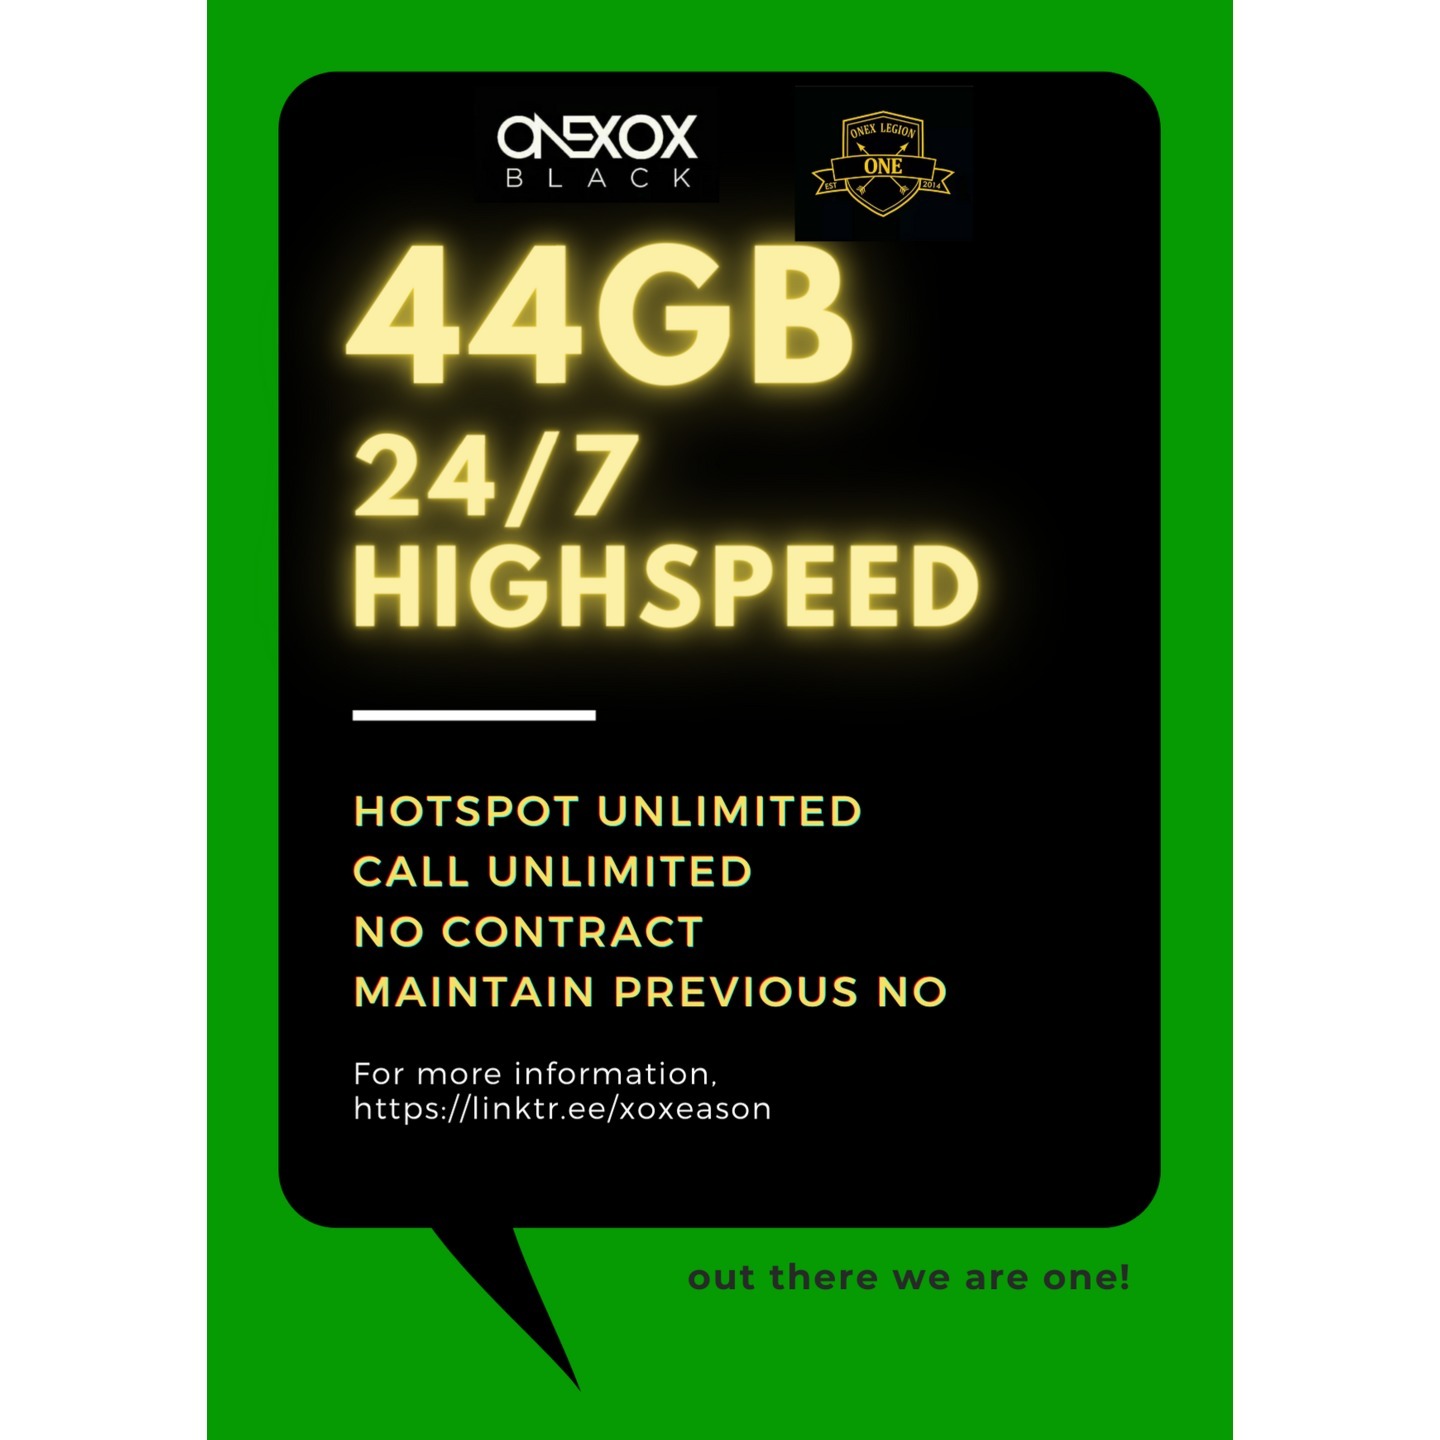 ONEXOX  Black Postpaid Plan 44GB